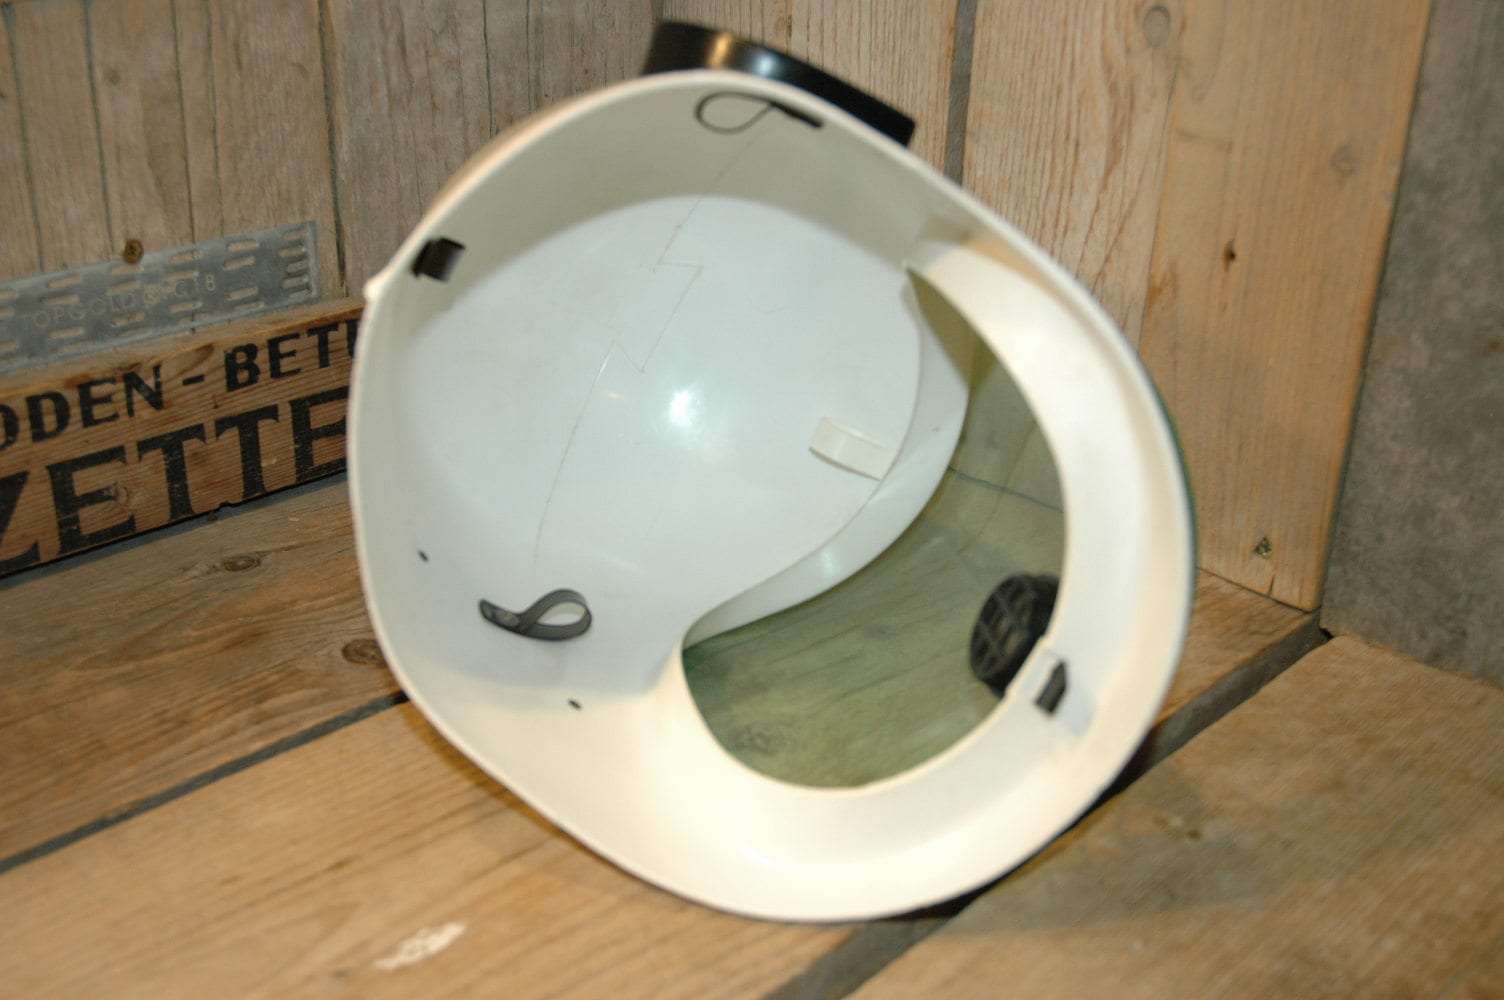 Ideal - Astronaut Space Helmet